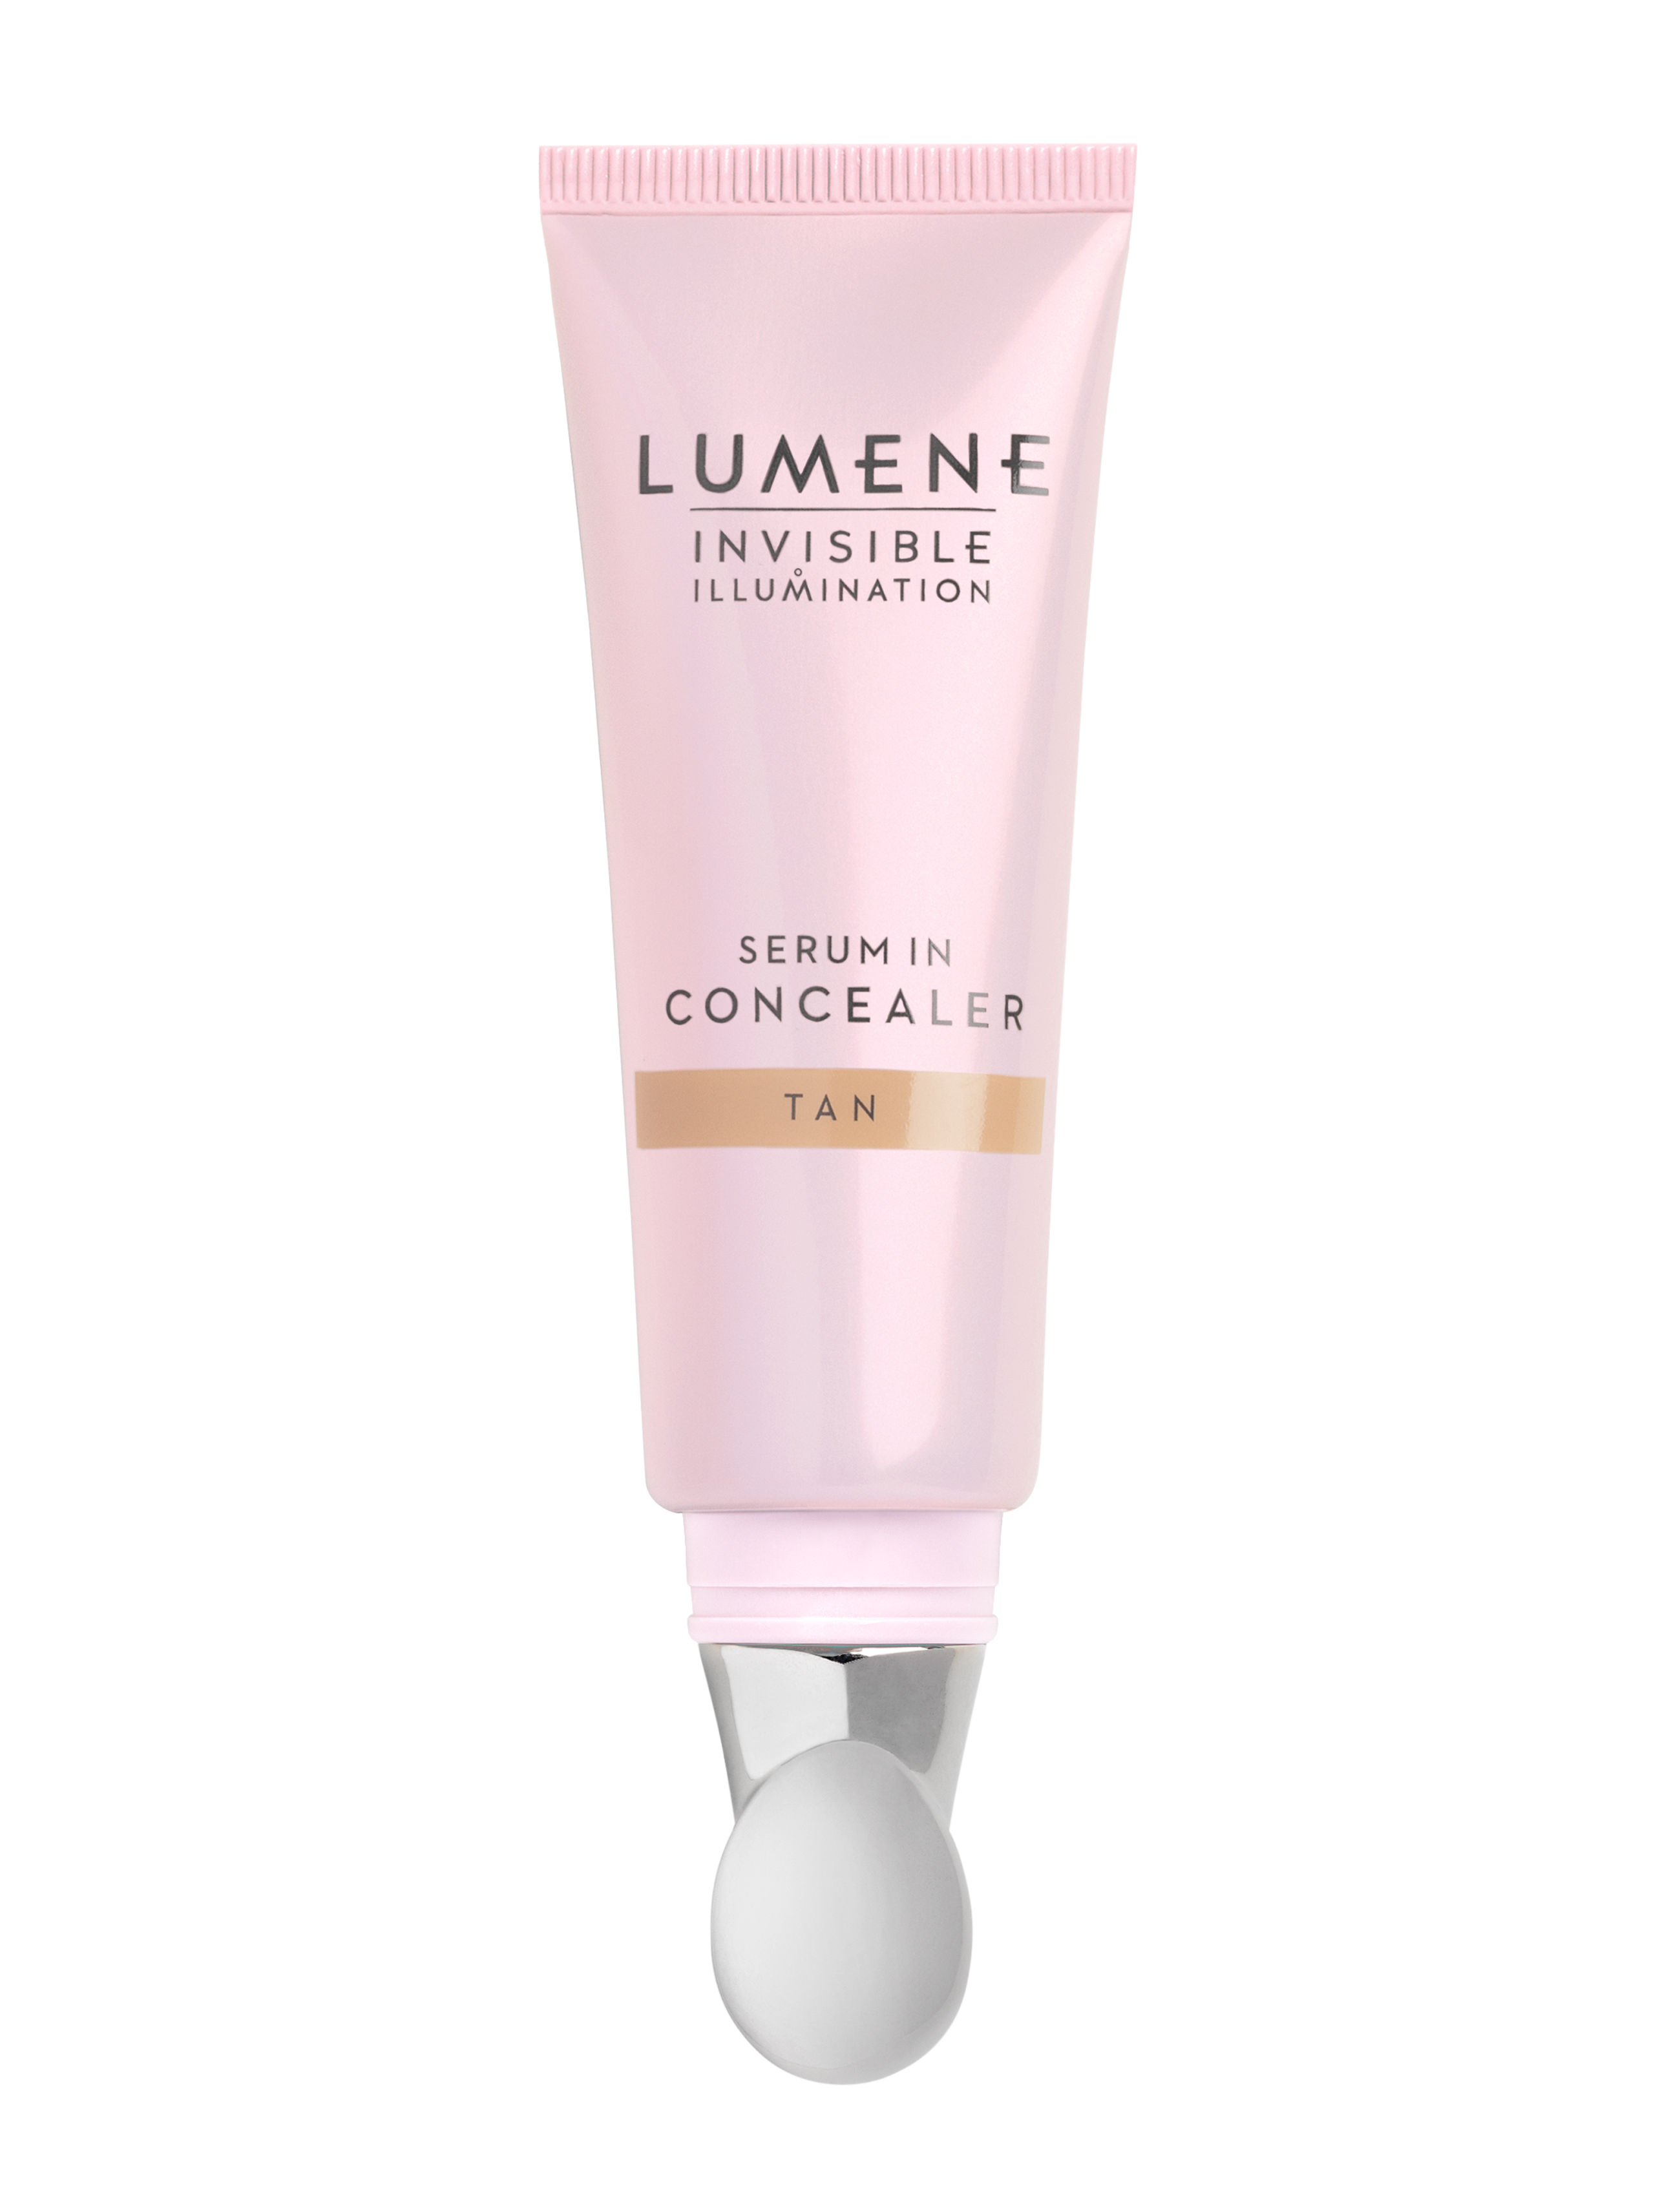 Lumene Invisible Illumination Serum In Concealer, Tan, 10 ml